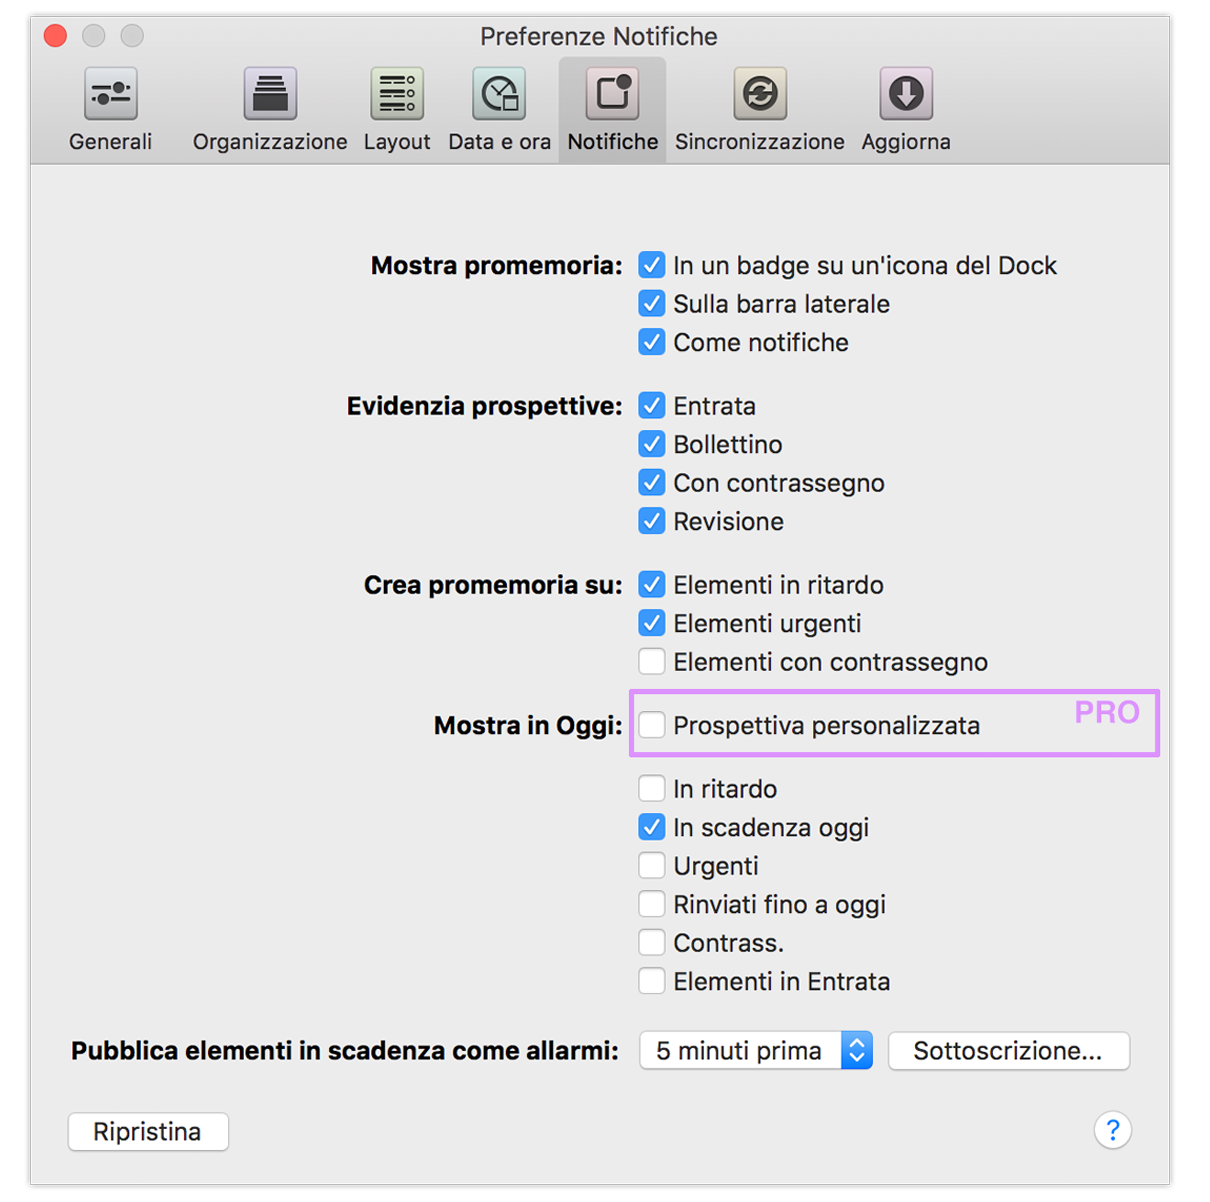 Preferenze Notifiche di OmniFocus 2 per Mac.